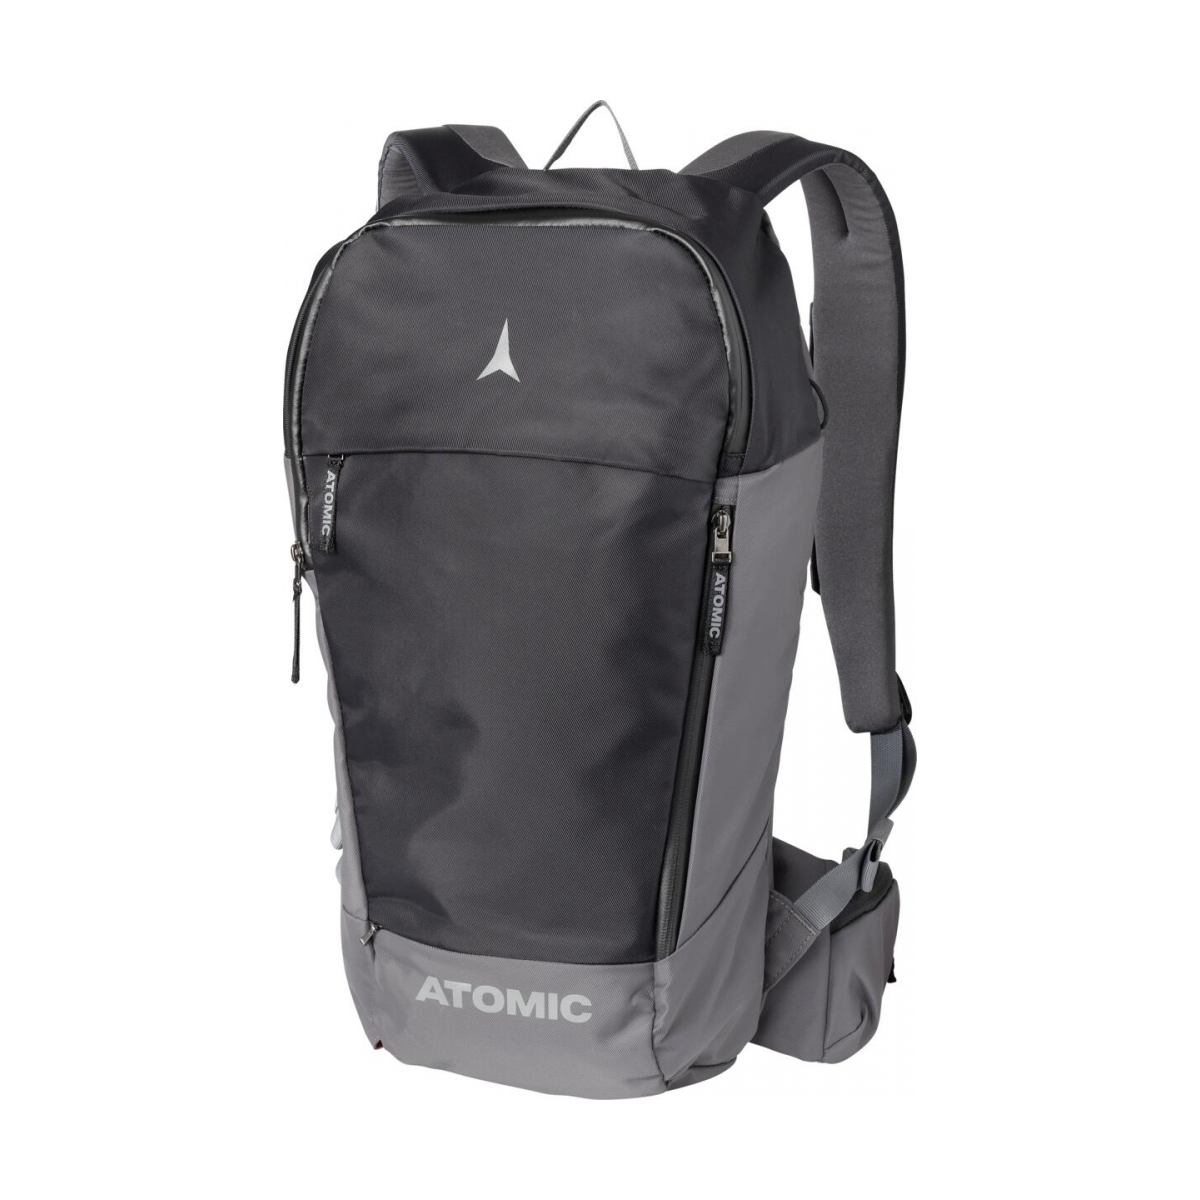 ATOMIC ALLMOUNTAIN 18L backpack for equipment - black